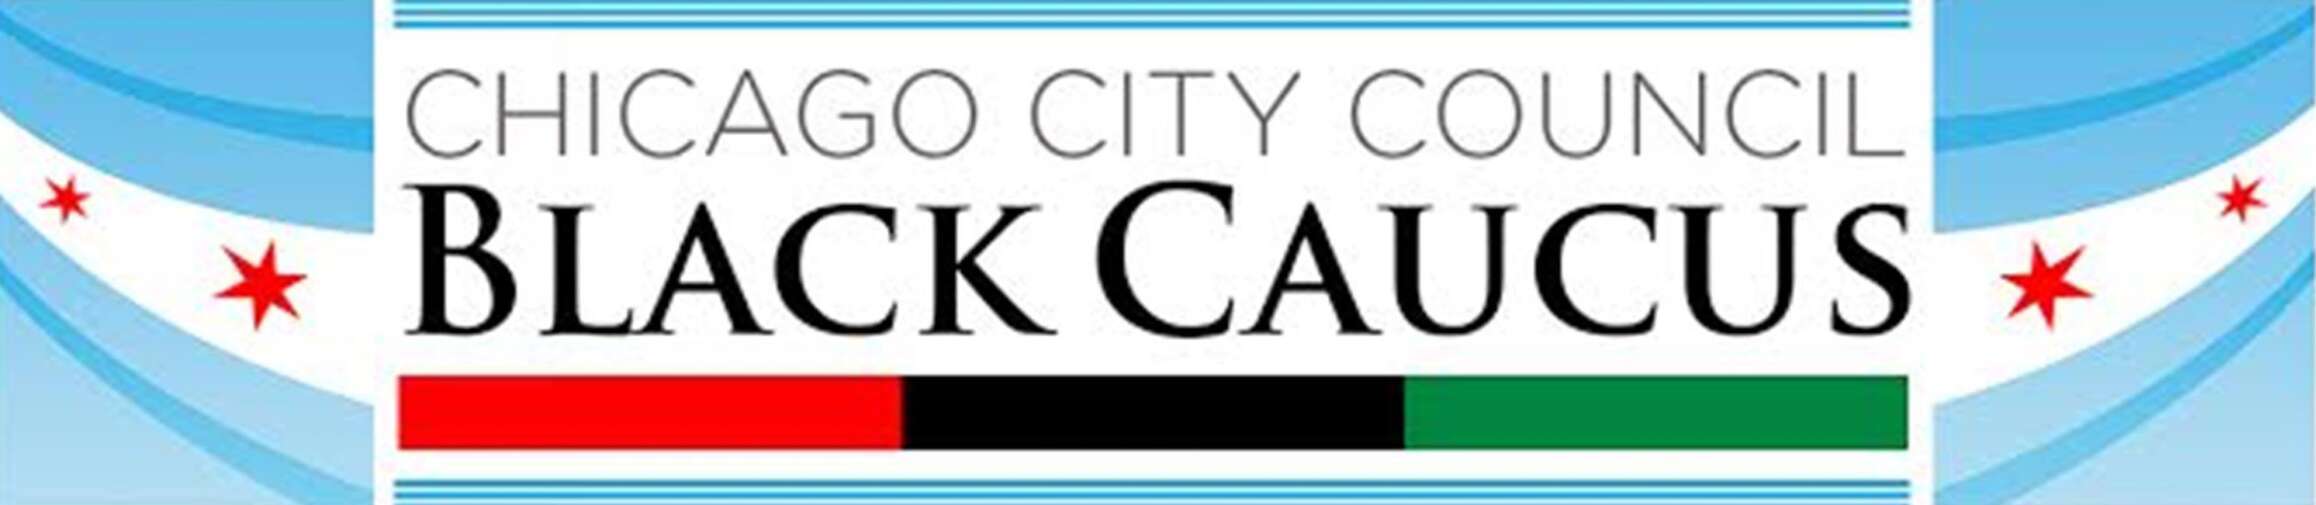 Chicago City Council Black Caucus